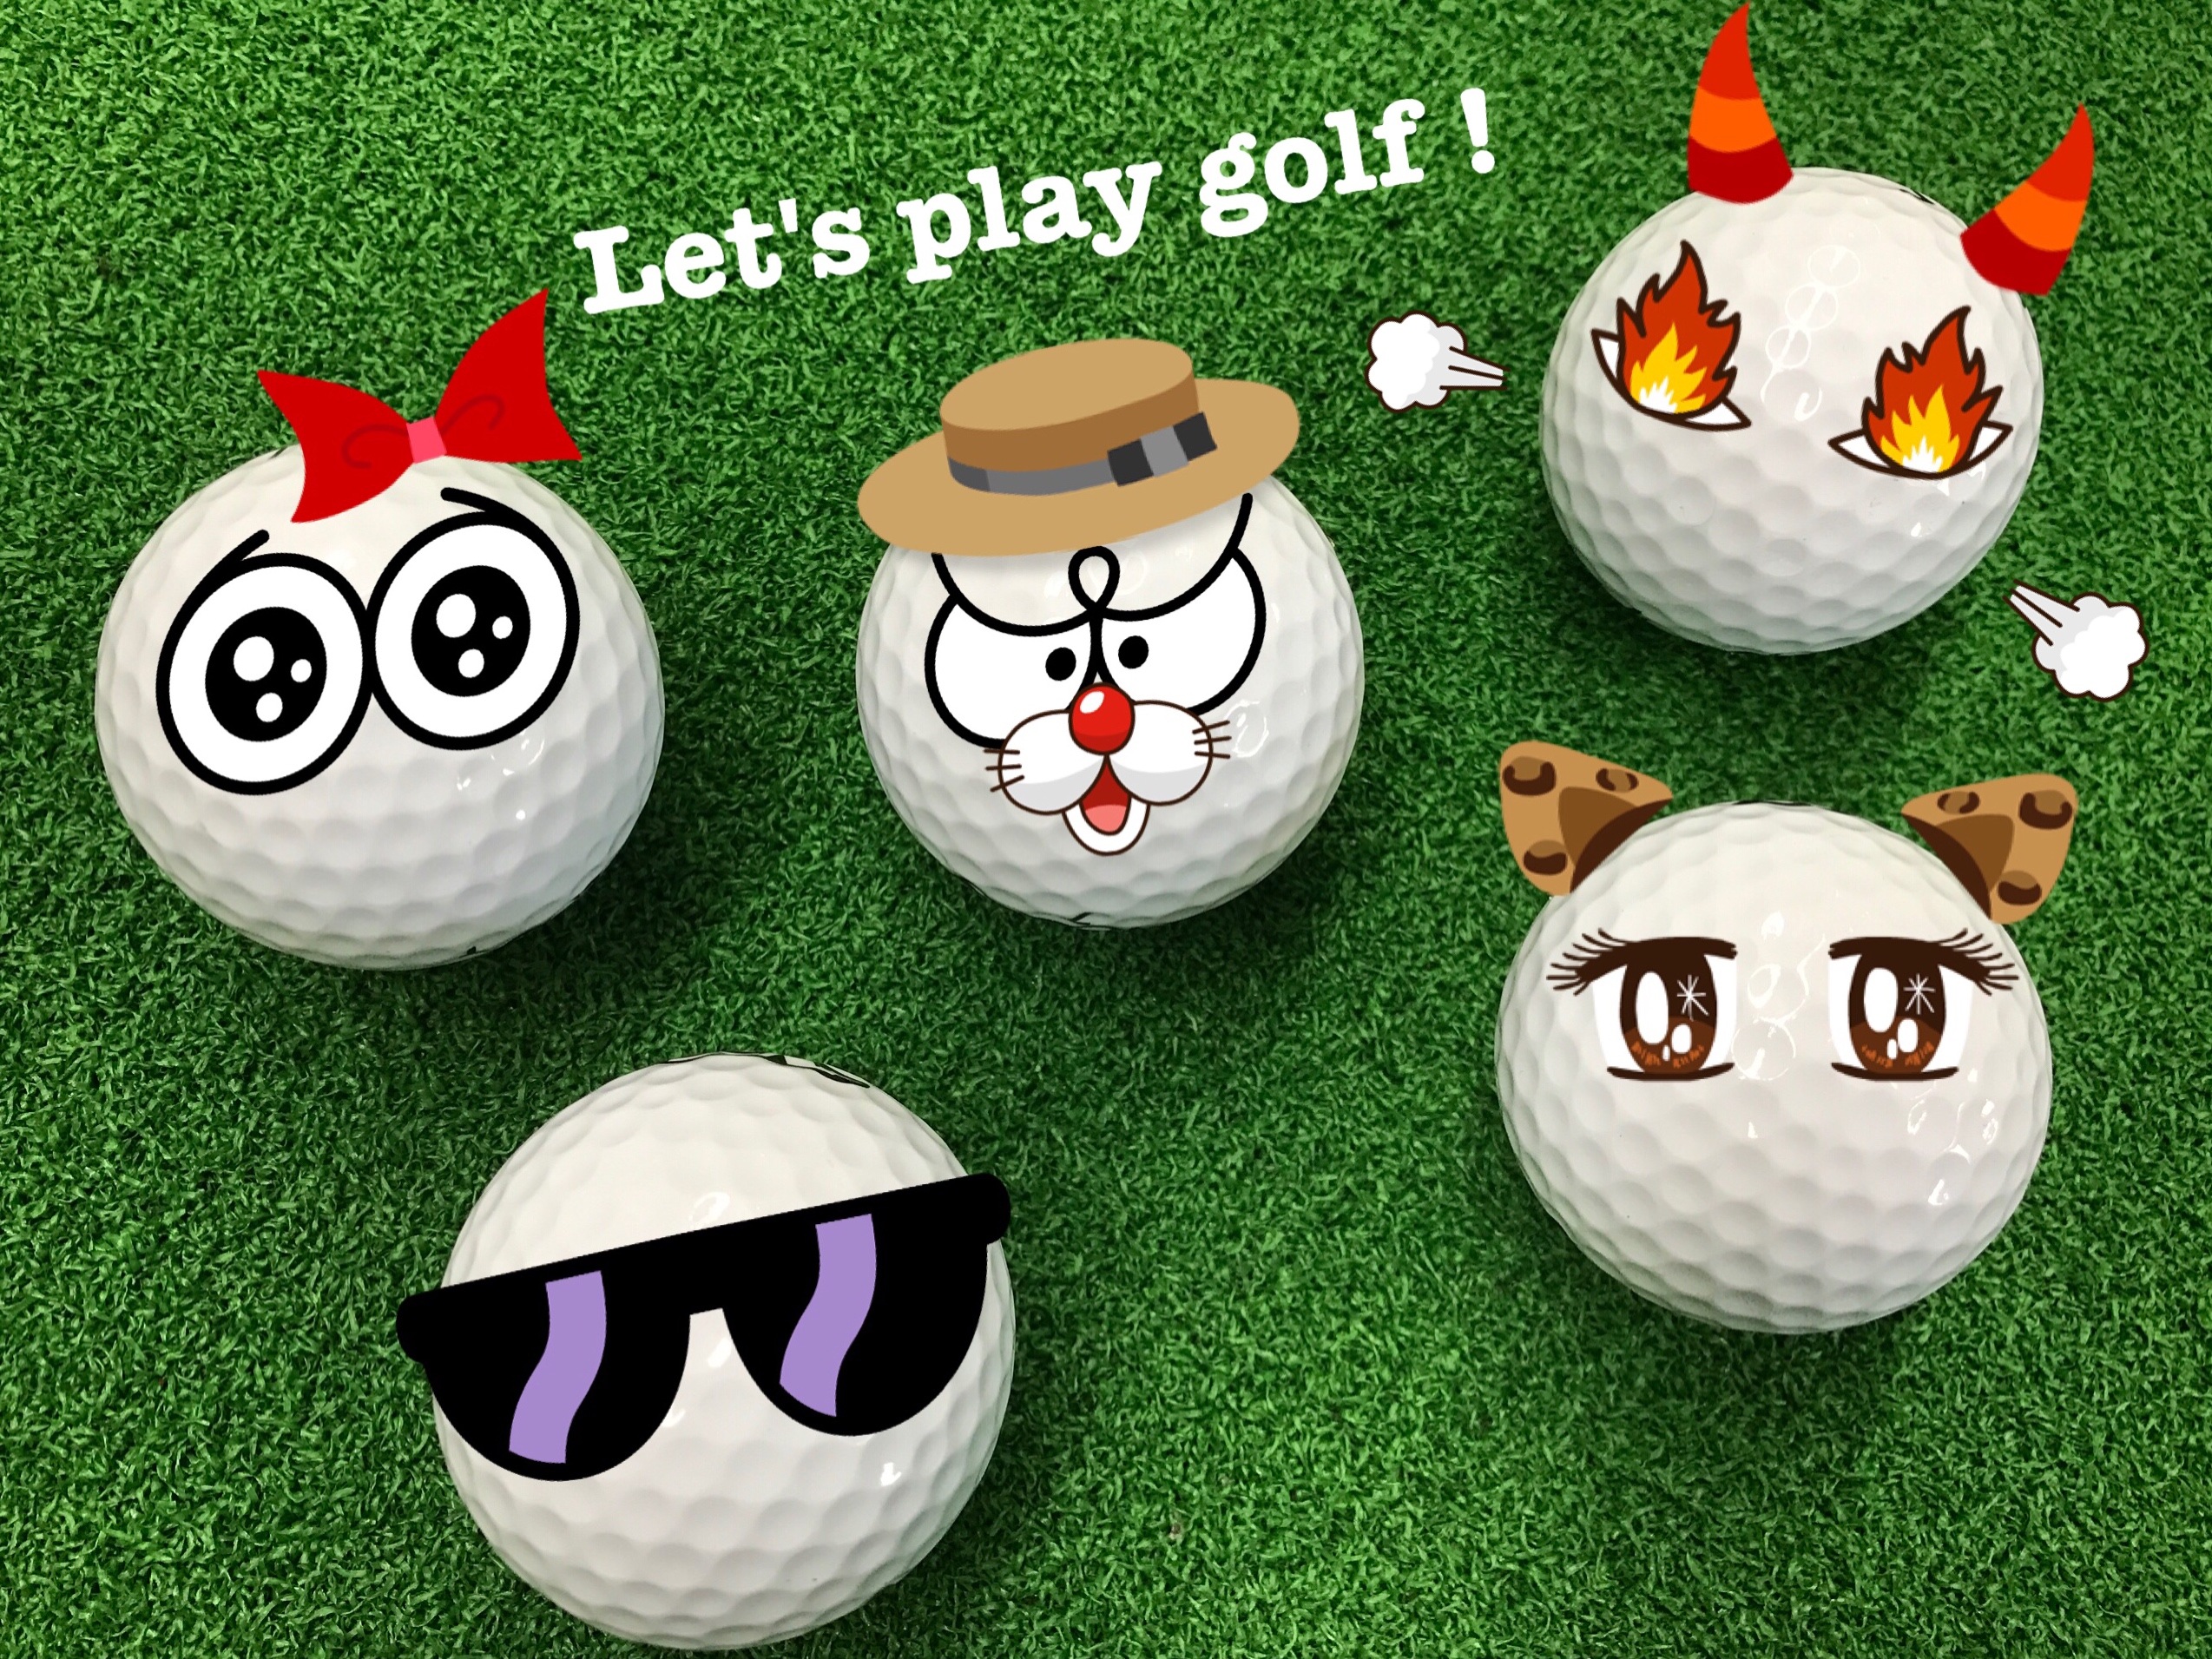 http://www.golfpartner.co.jp/355/IMG_0091.JPG